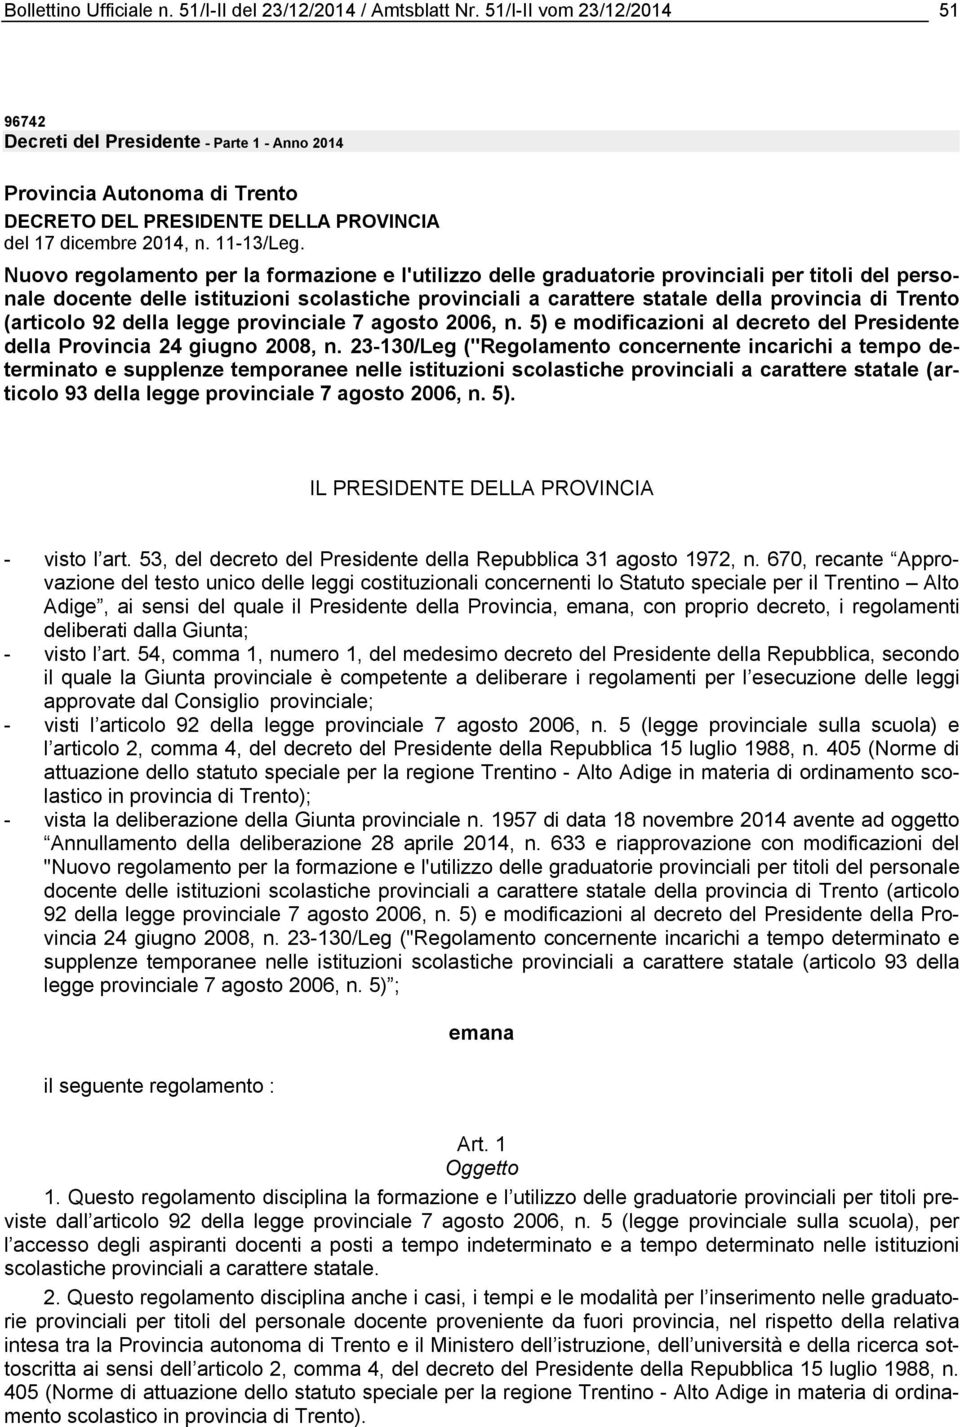 Nuovo regolamento per la formazione e l'utilizzo delle graduatorie provinciali per titoli del personale docente delle istituzioni scolastiche provinciali a carattere statale della provincia di Trento